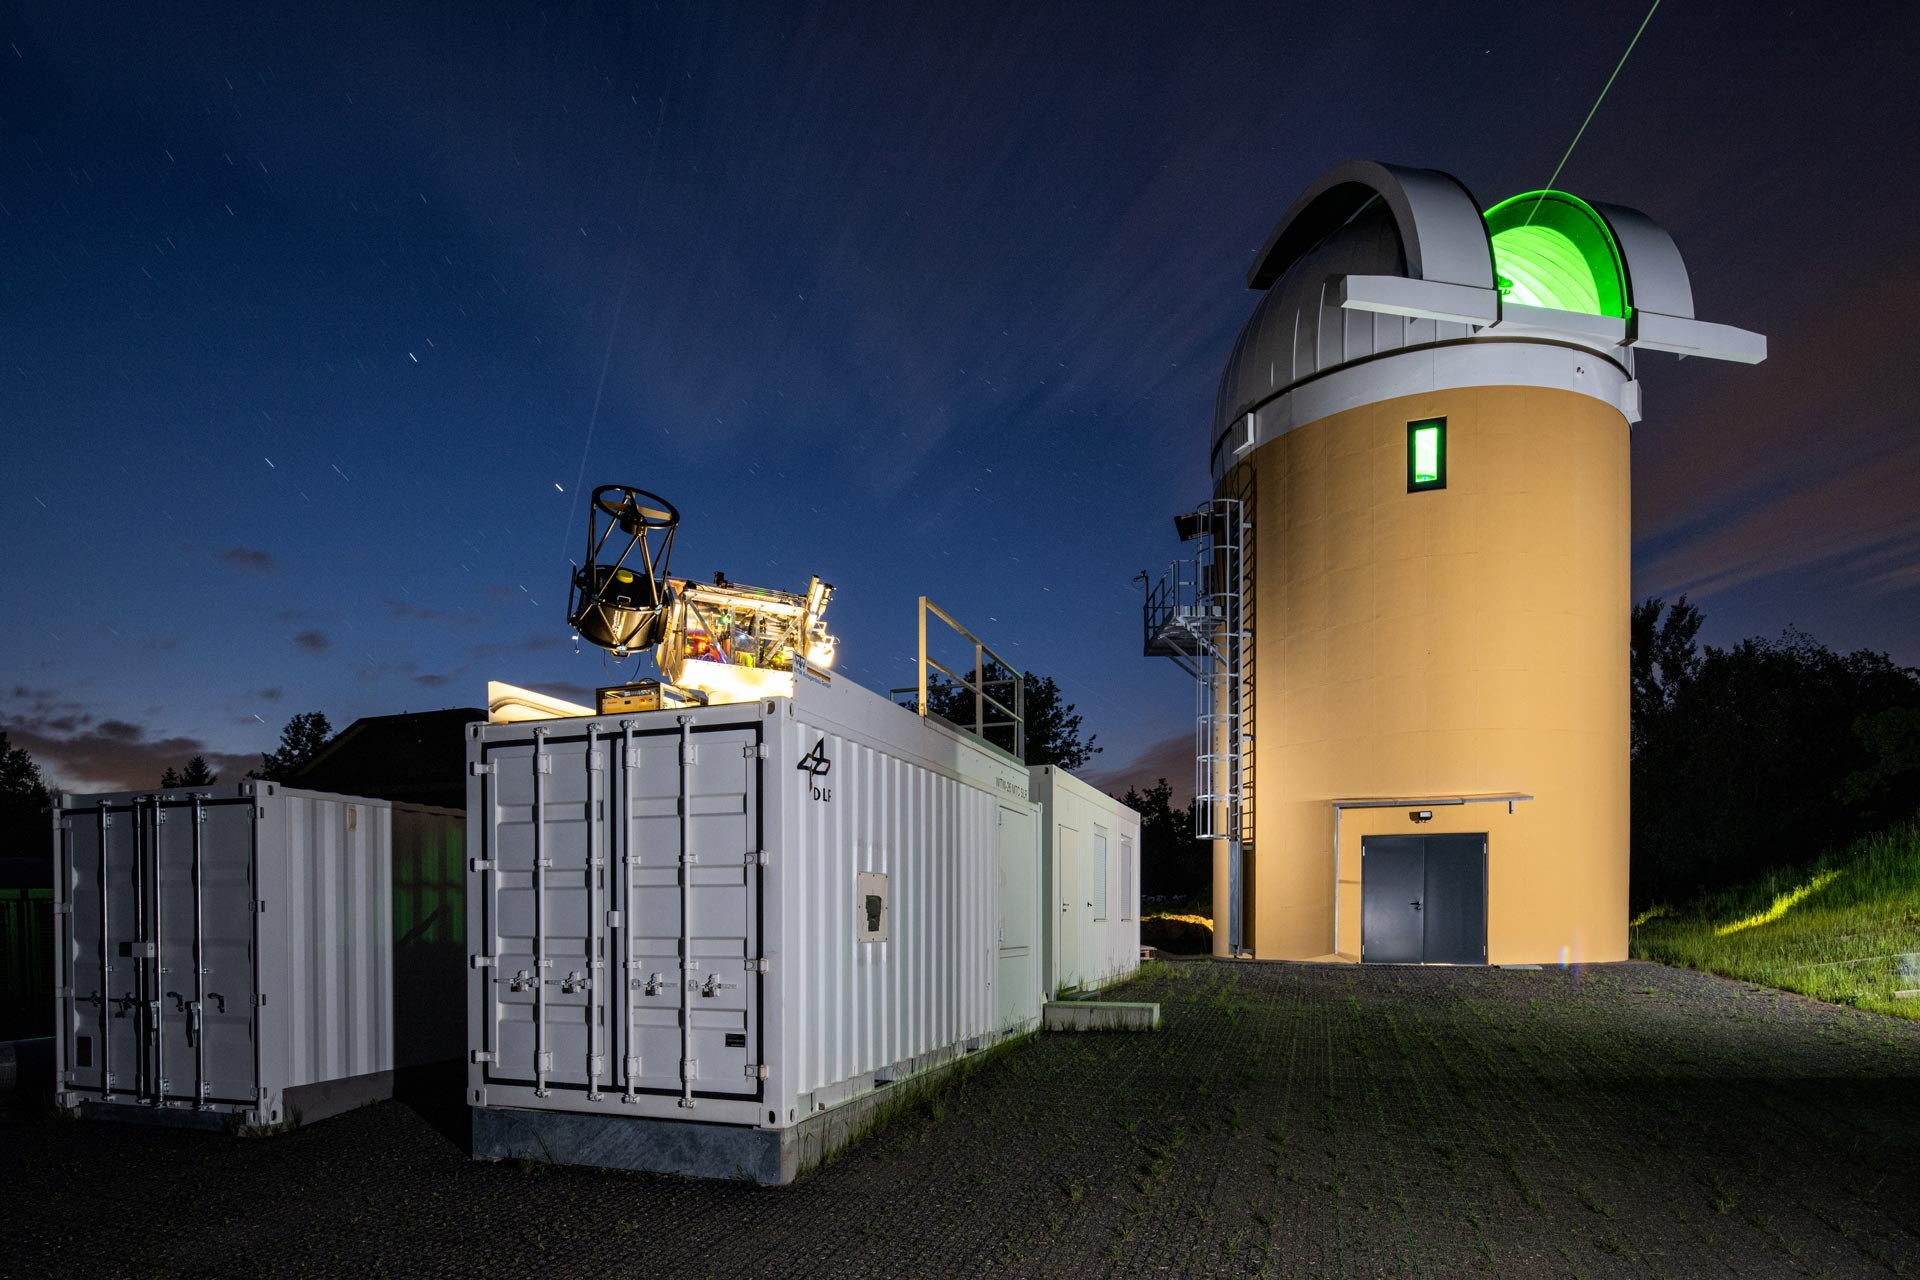 DLR's Johannes Kepler Observatory